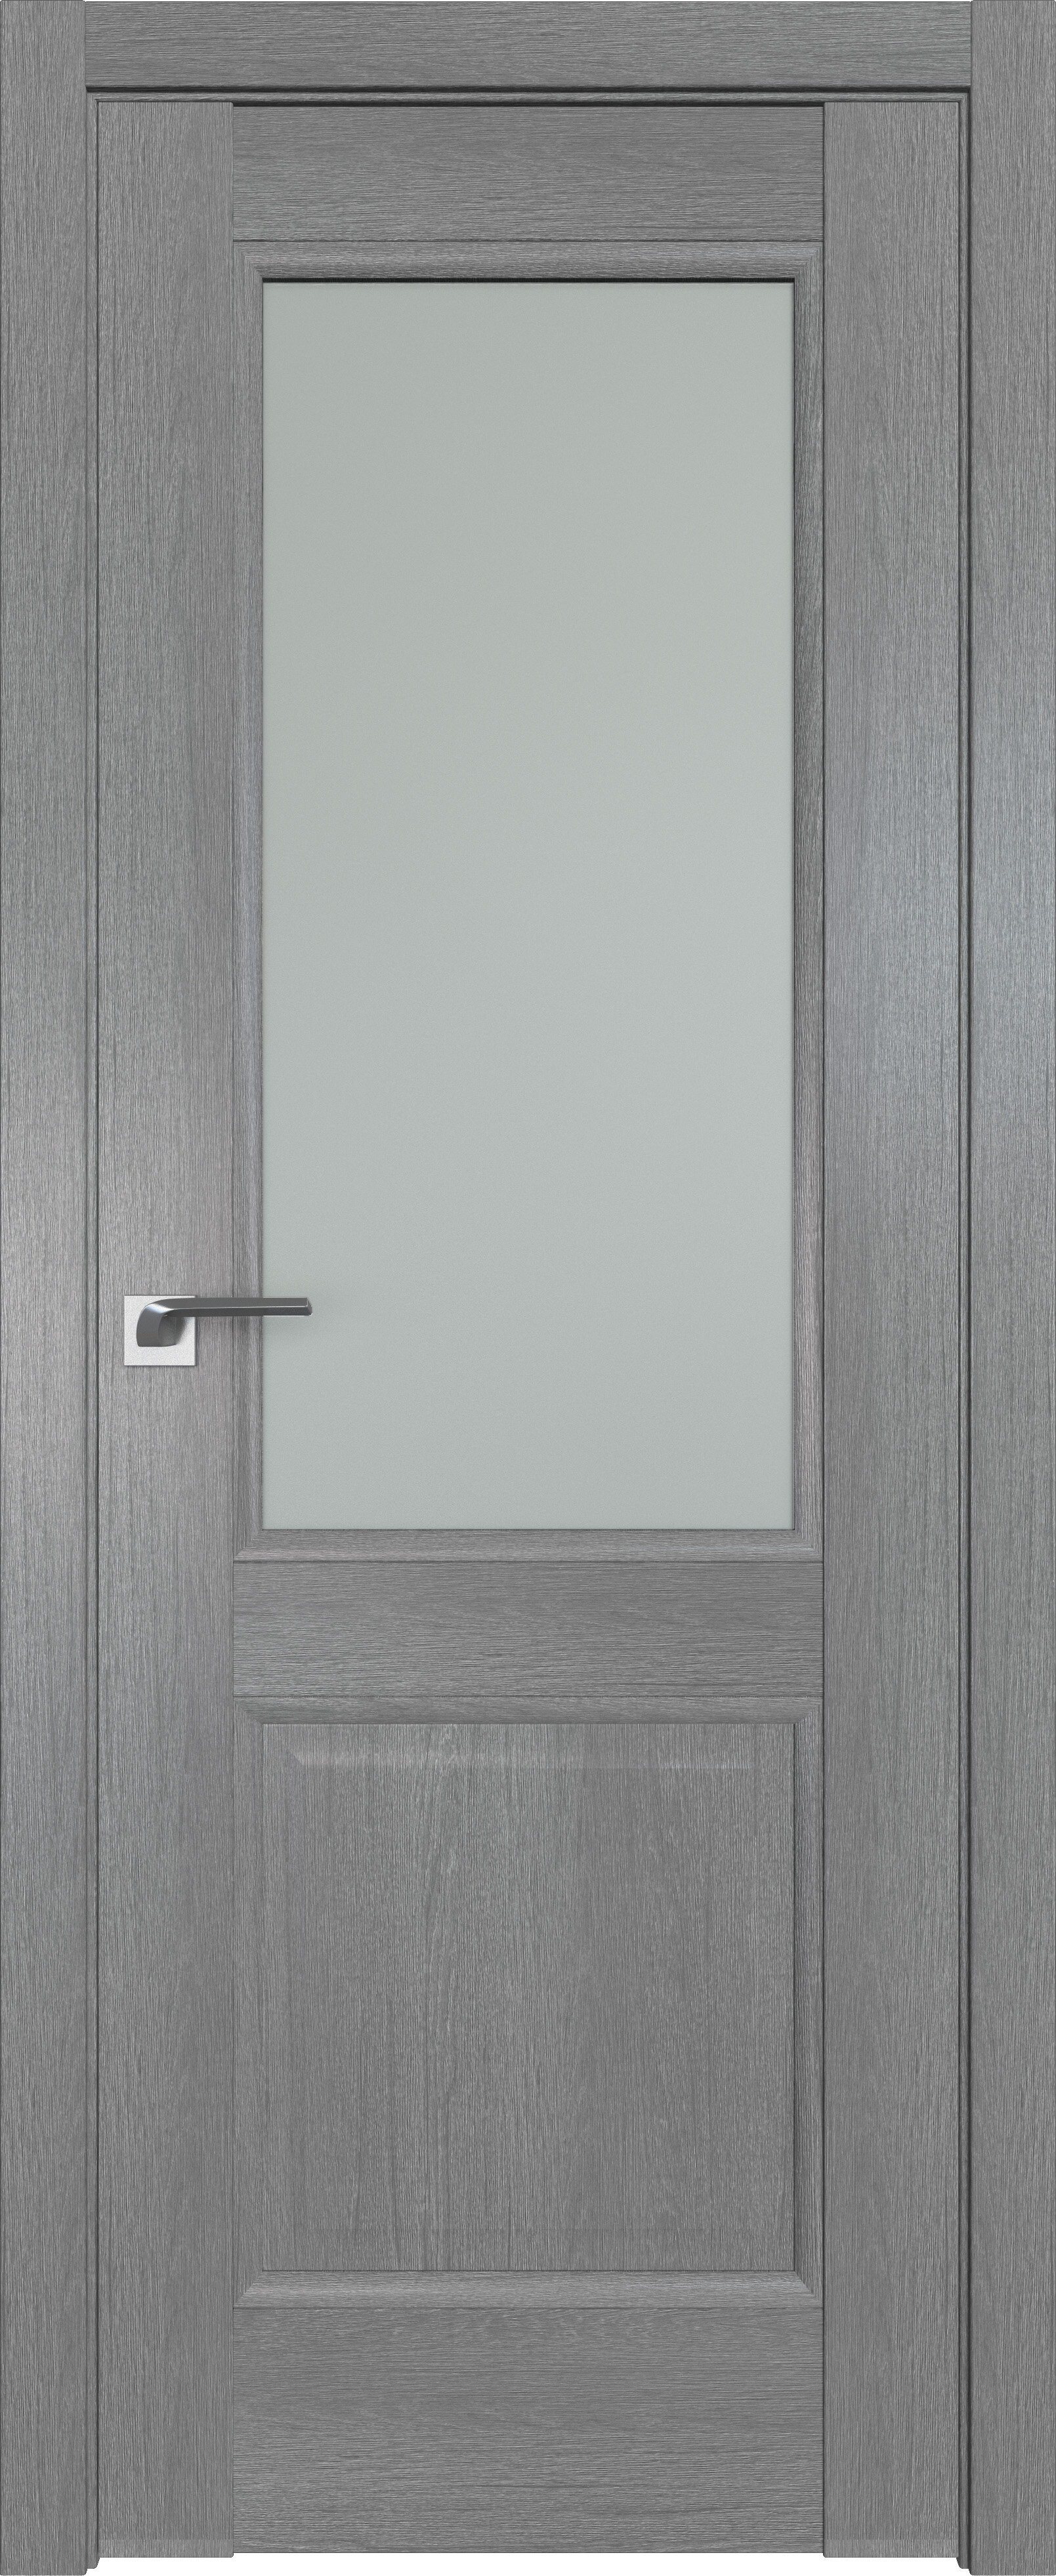 Дверь Профиль дорс 2.42 XN (Грувд серый) стекло матовое